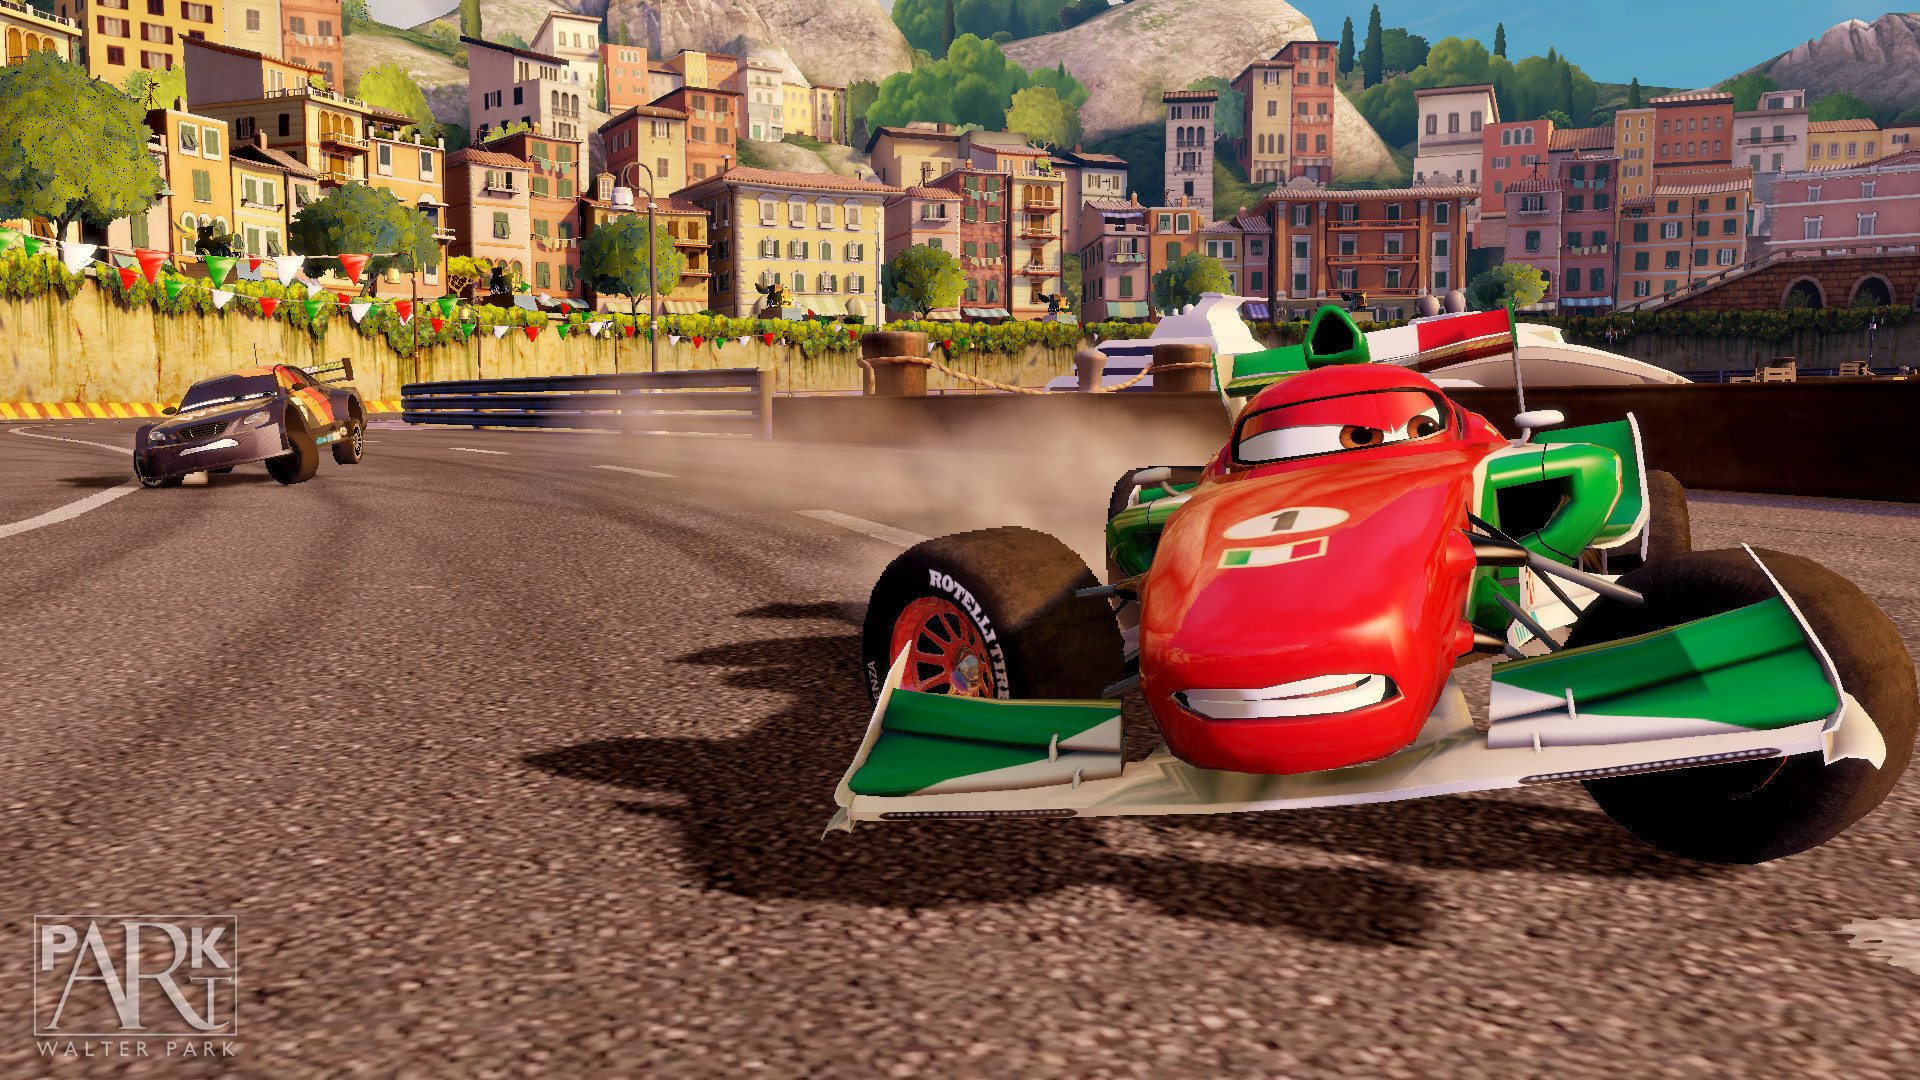 Игры тачки игры такие. Игра Disney Pixar cars 2. Cars 2 Xbox 360. Тачки / cars: the videogame. Тачки 2 хбокс 360.